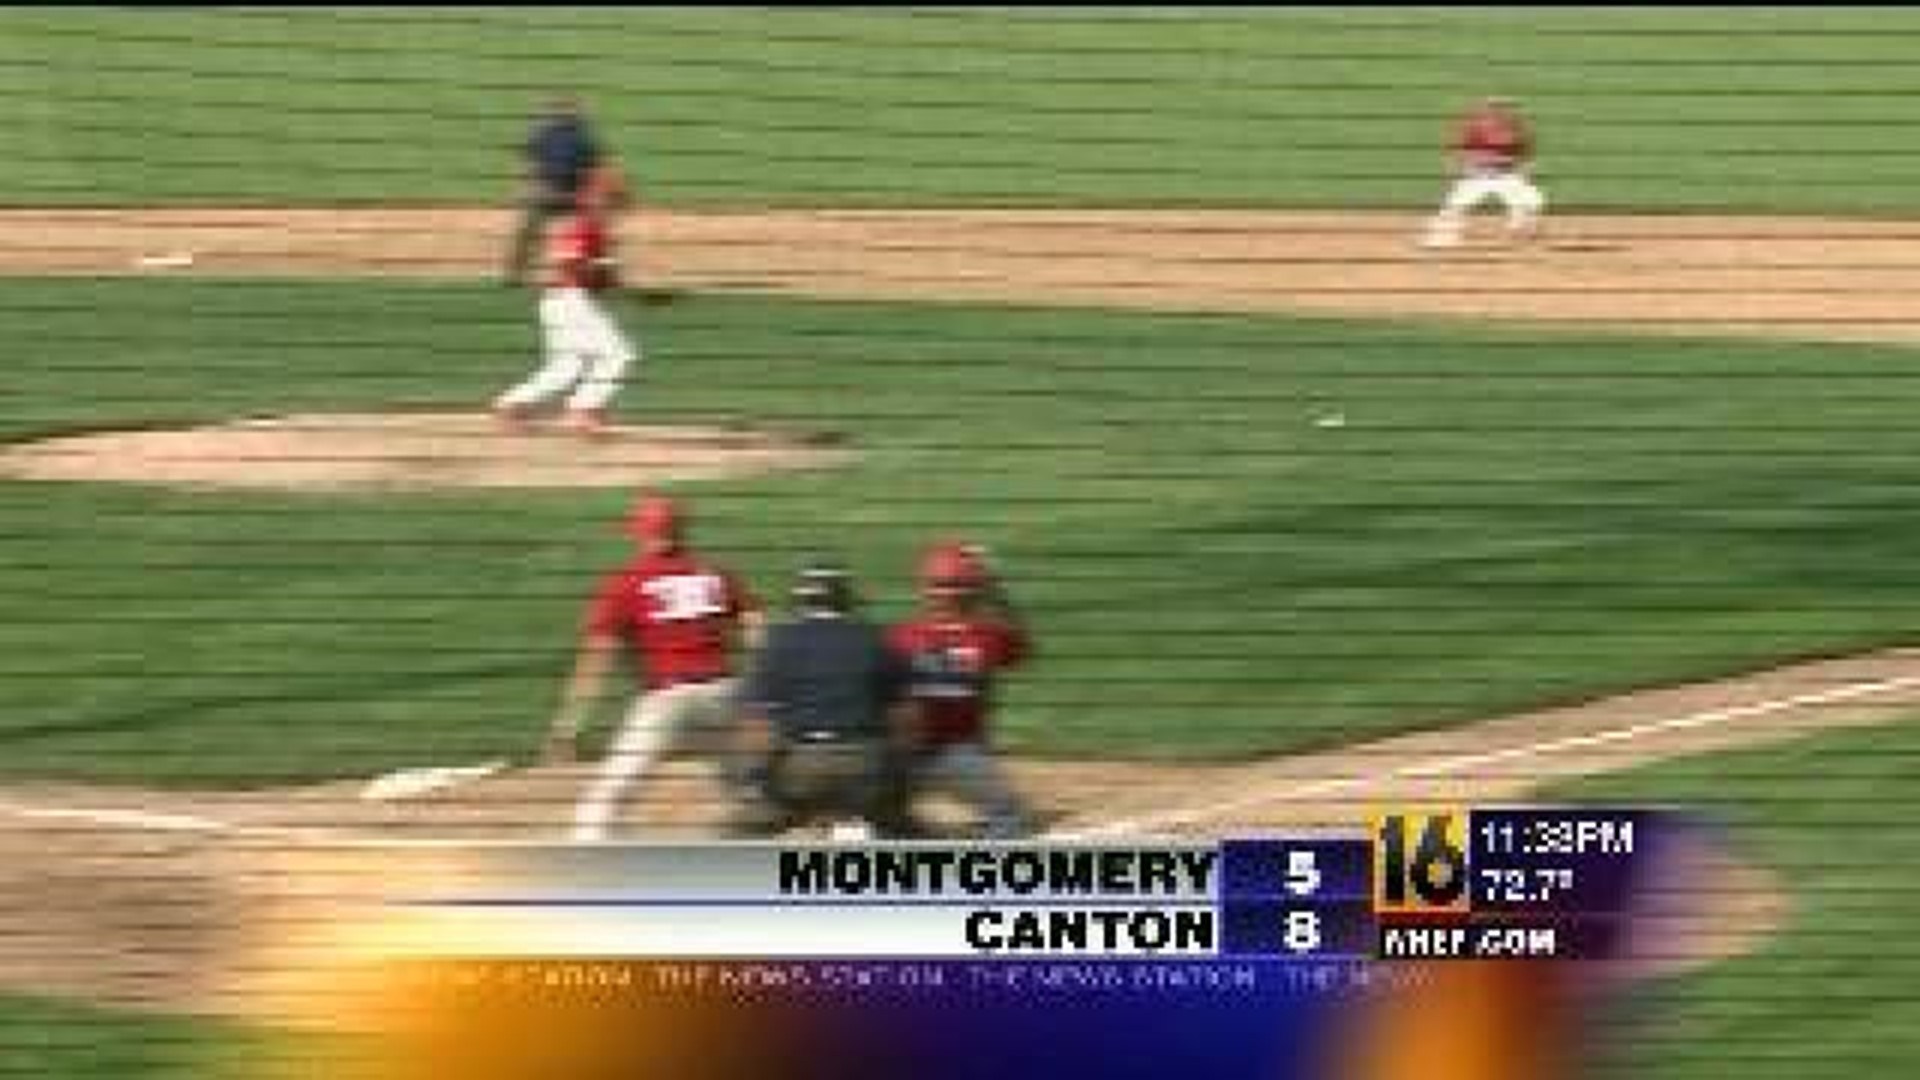 Montgomery vs Canton